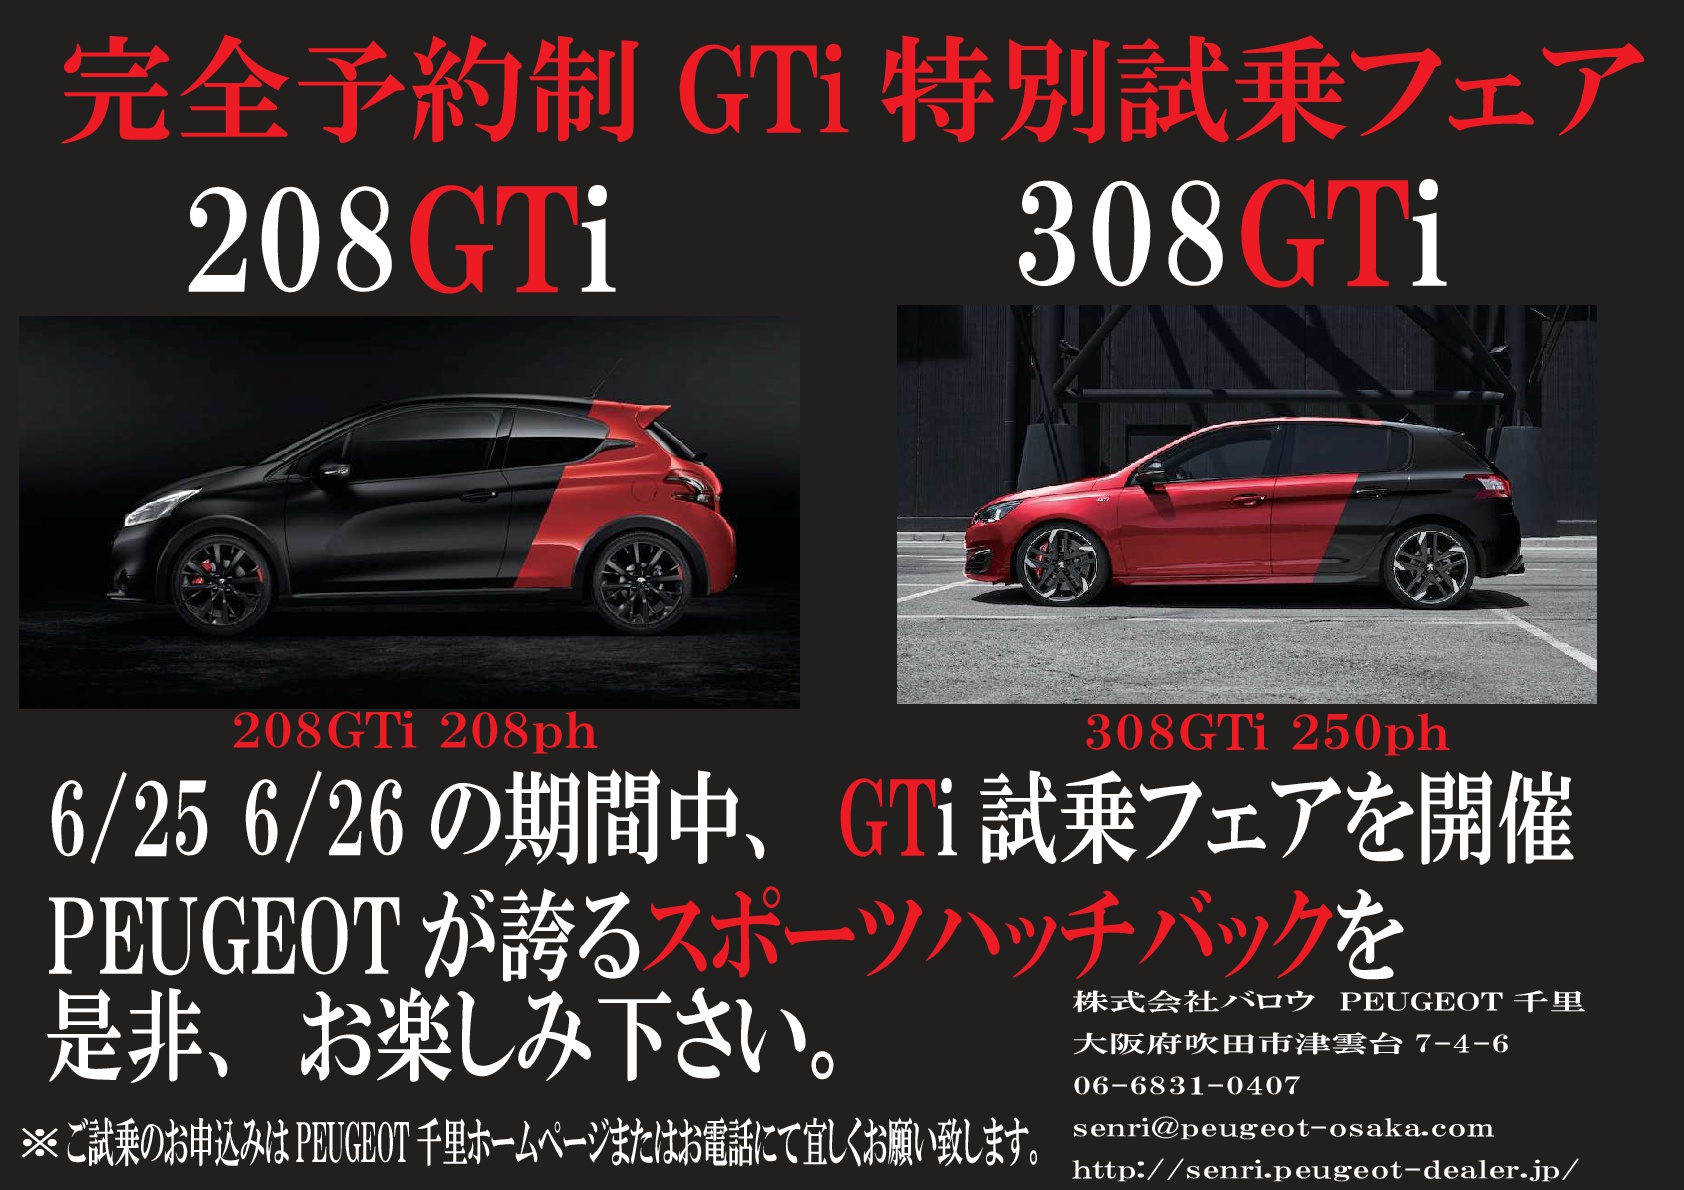 プジョー千里完全予約制GTi特別試乗フェアのお知らせ。